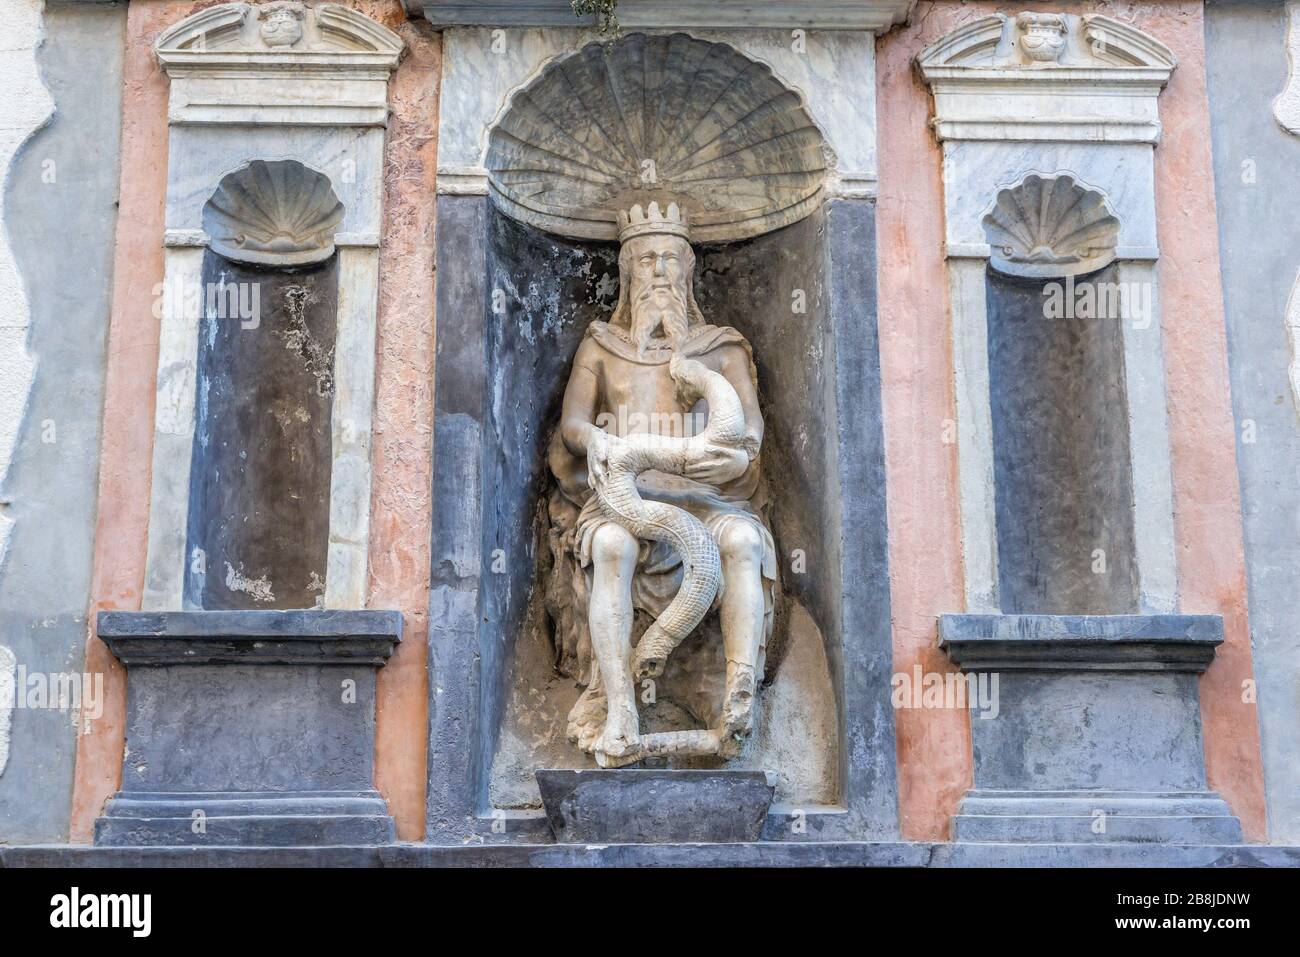 Genio del Garraffo 15th century marble statue Castellammare o Loggia district of Palermo city in Italy, capital of autonomous region of Sicily Stock Photo